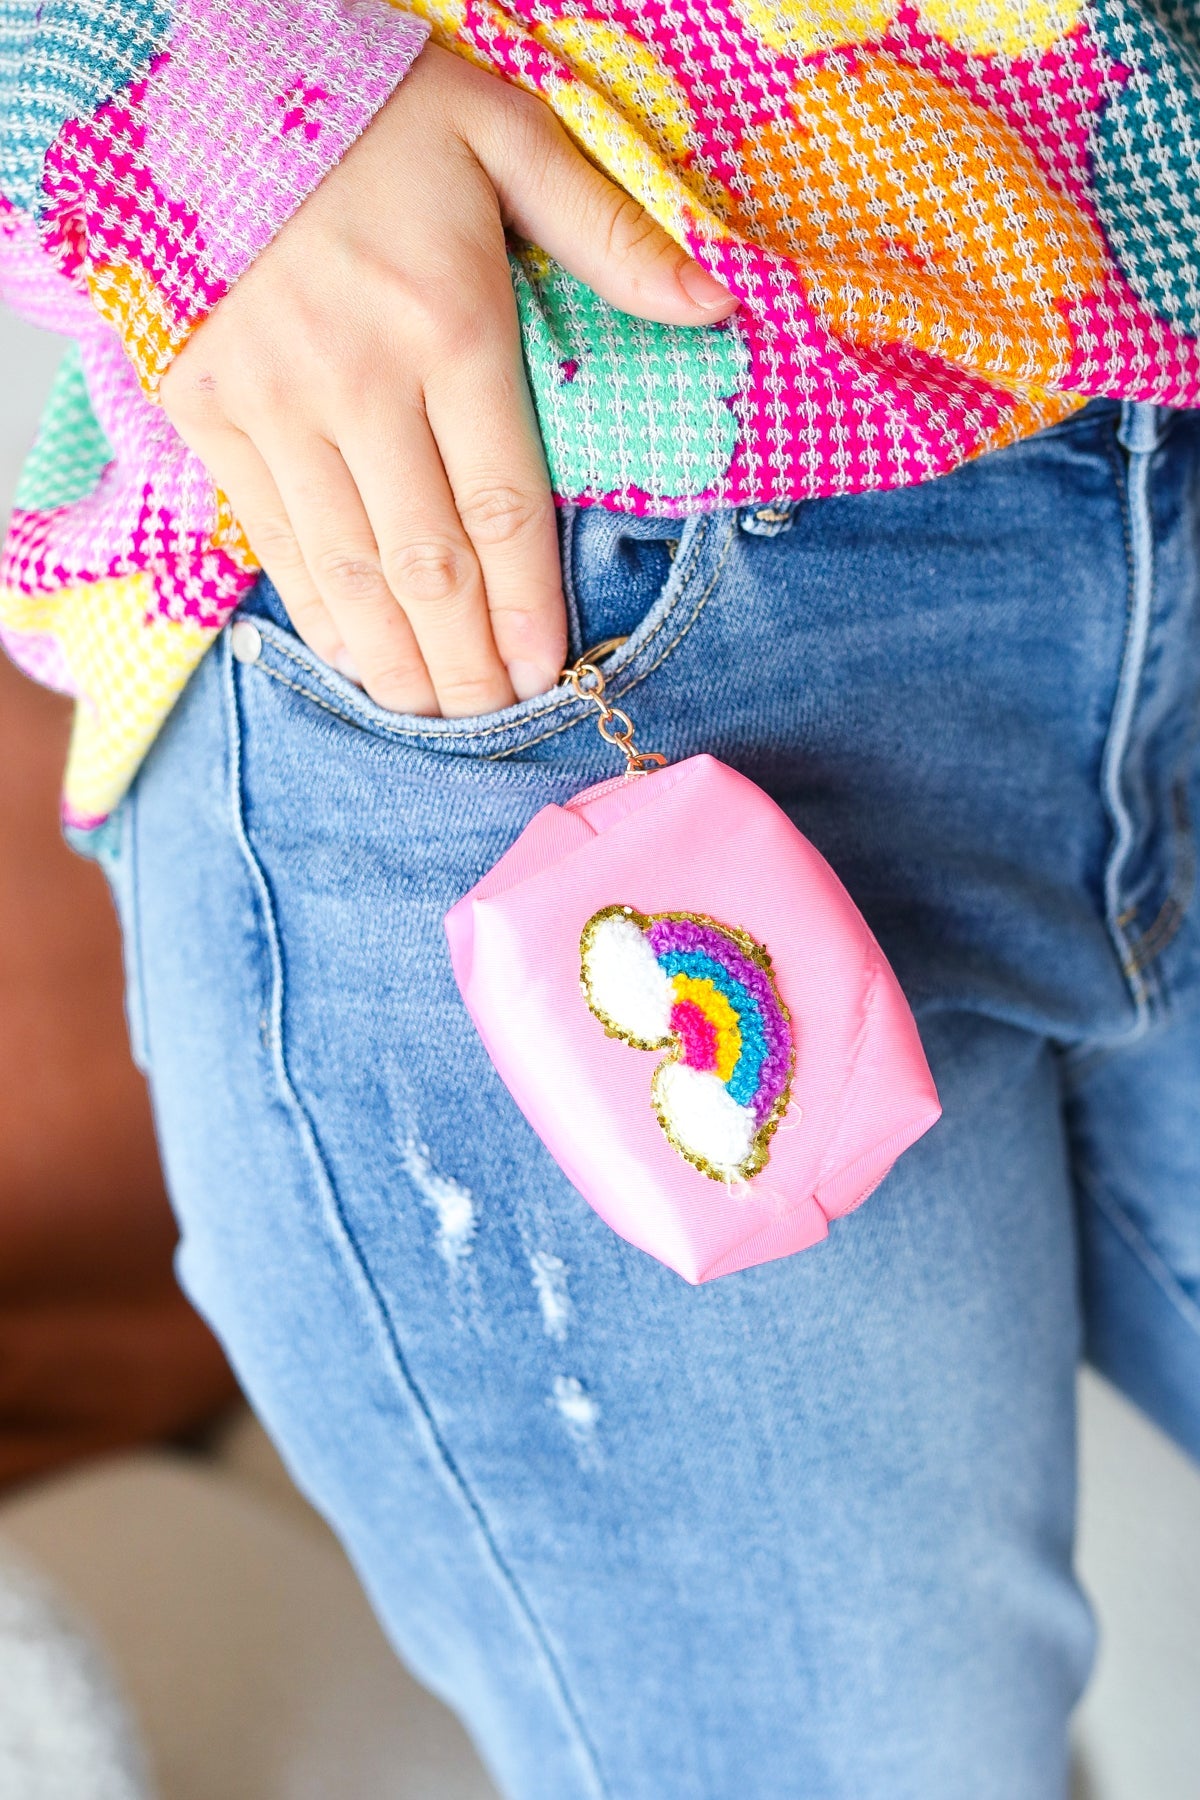 Rainbow Patch Coin Purse Keychain | Bubblegum Pink